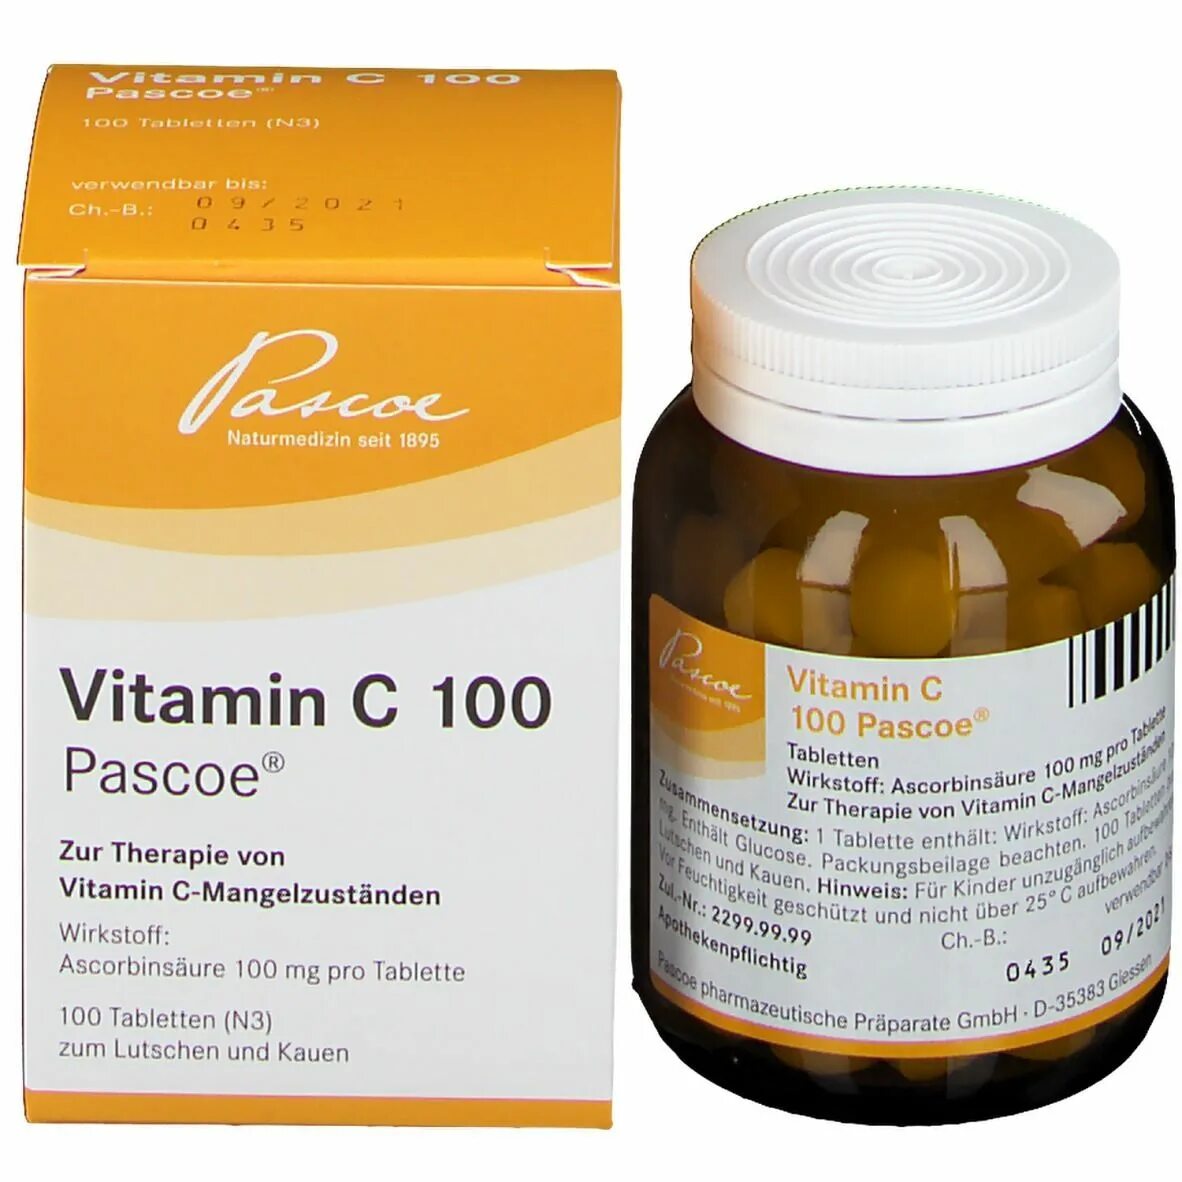 Pascoe. Витамины в Pascoe. Vitamin c. Югославские витамины.